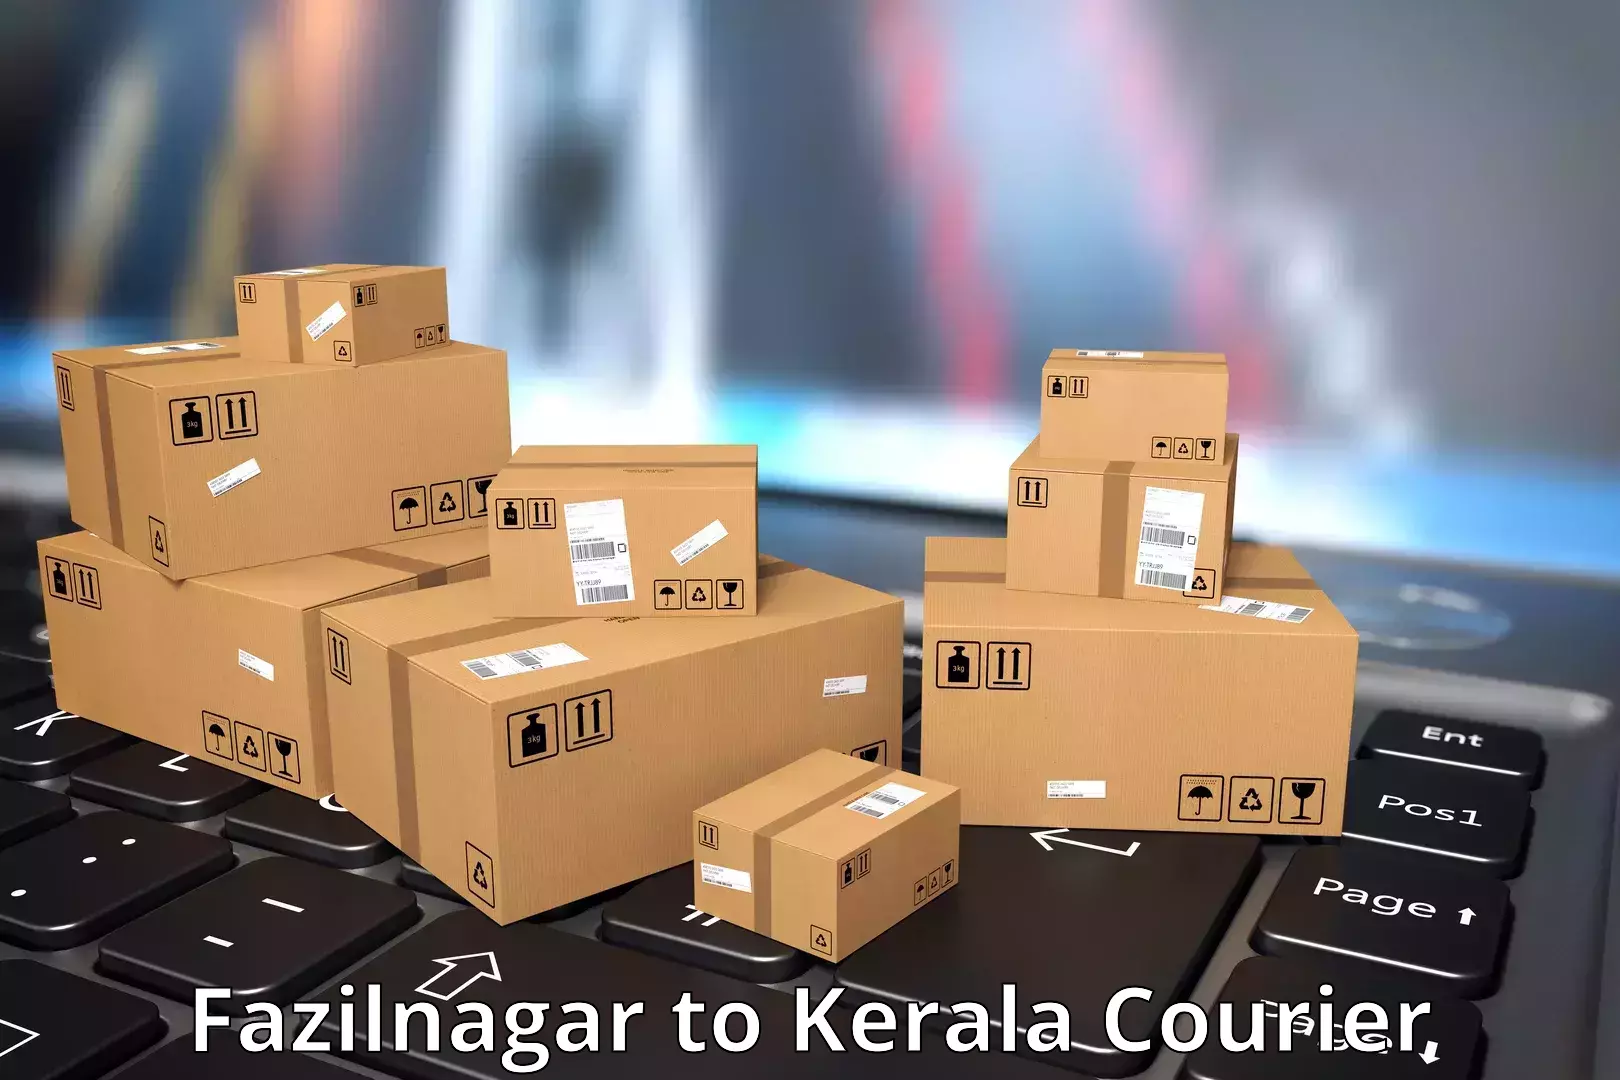 24-hour courier service Fazilnagar to Karunagappally